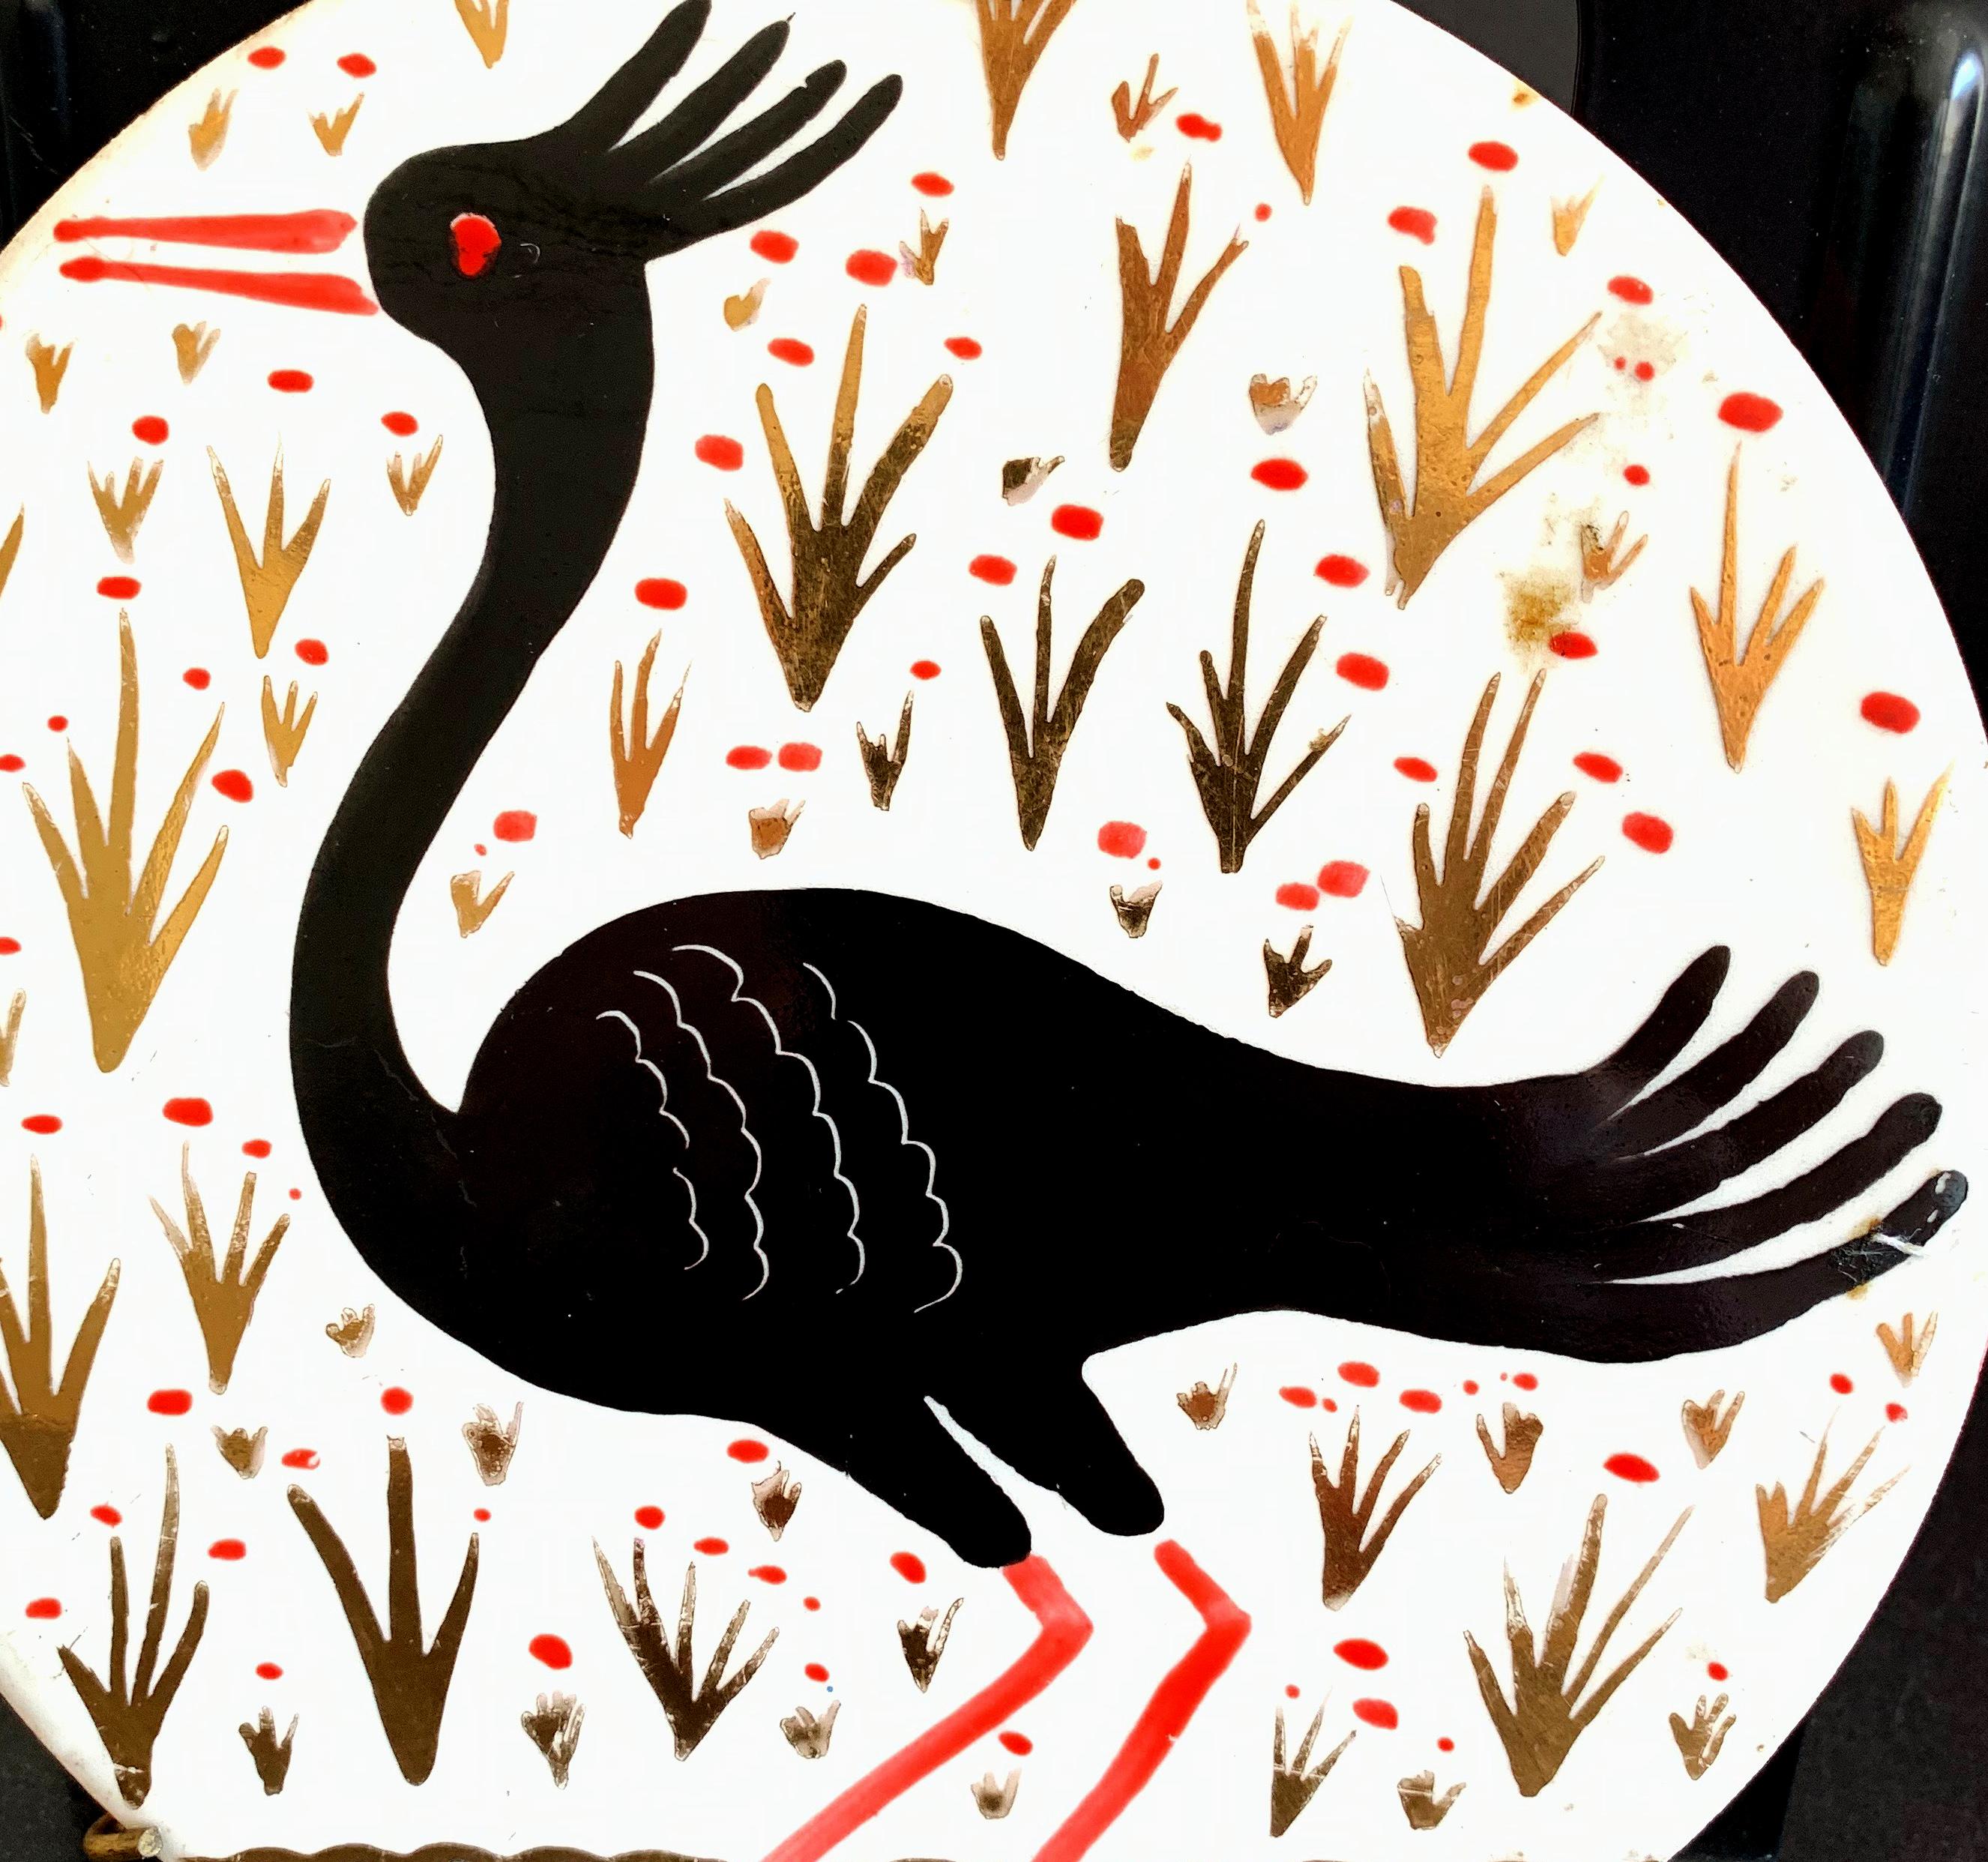 Rare et gagnant, ce joli rondel en porcelaine Art déco, émaillé de noir, d'or et de rouge sur un fond blanc, a été conçu et exécuté par Waylande Gregory, le grand sculpteur et céramiste américain. L'oiseau aquatique à crête représenté est exotique